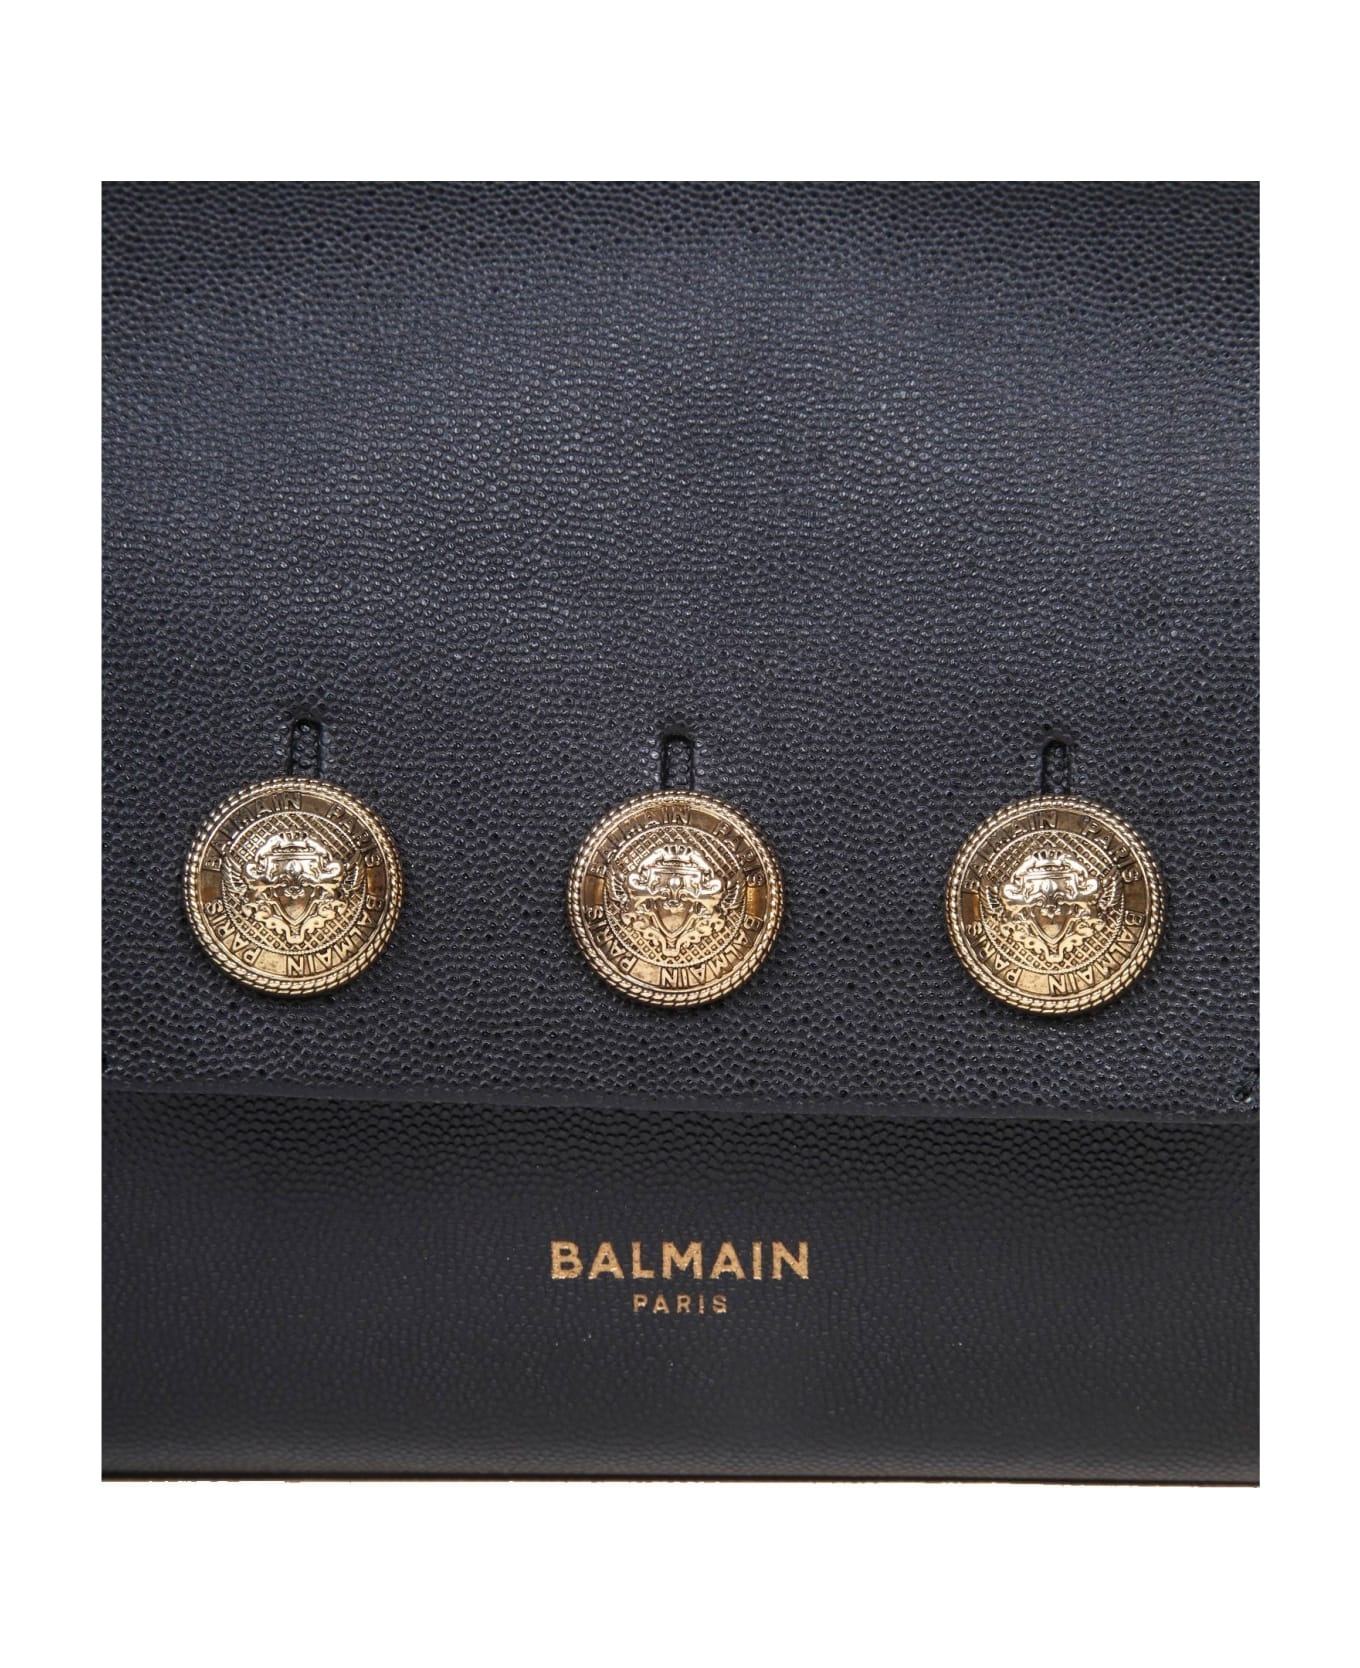 Balmain Emblem Bag In Calfskin With Decorative Buttons - 2